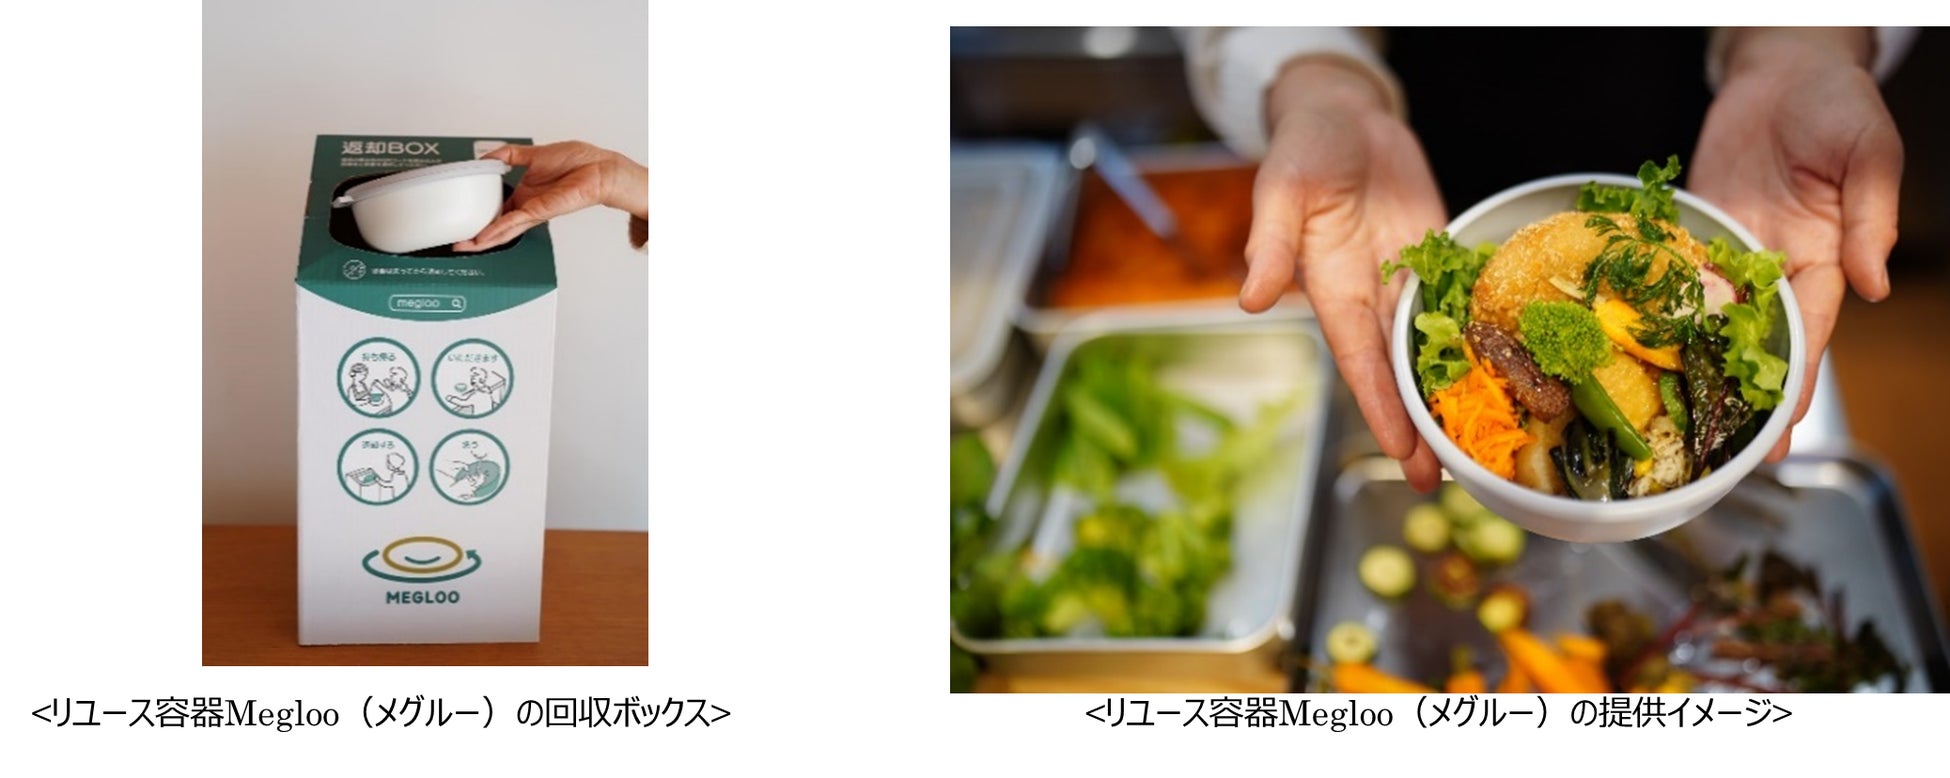 「乳酸菌」が配合された健康を志向する新しいフレーバー鍋
　『鮮魚亭 レモン鍋スープ』を8月1日に発売